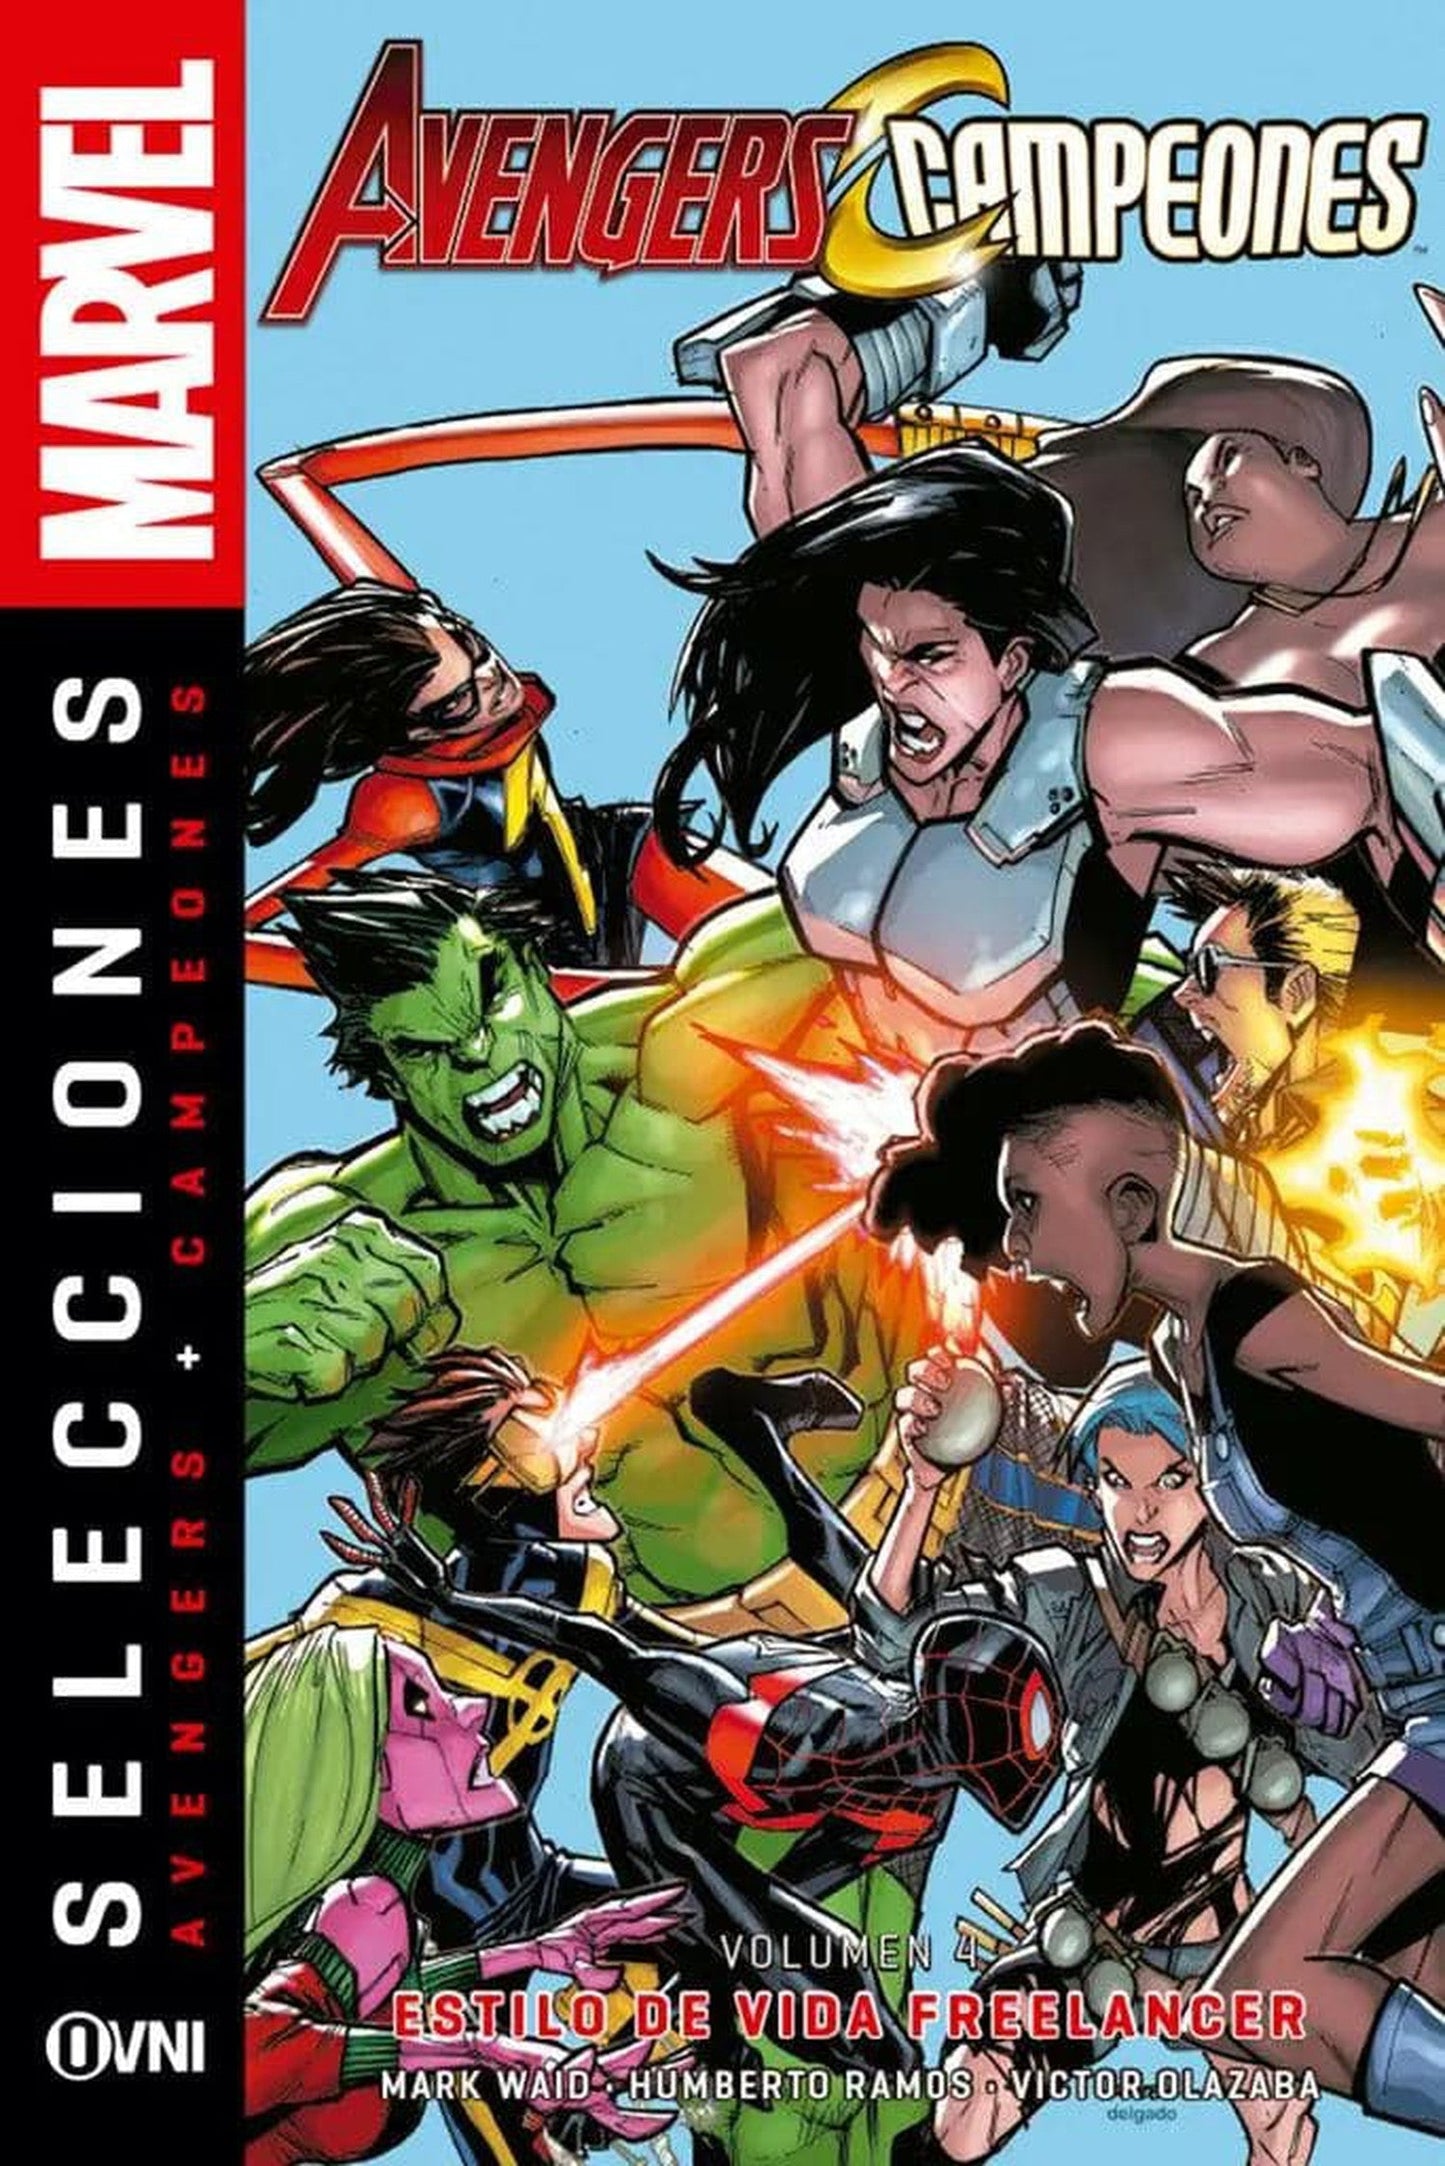 Avengers + Campeones Vol. 4: Estilo de Vida Freelancer.